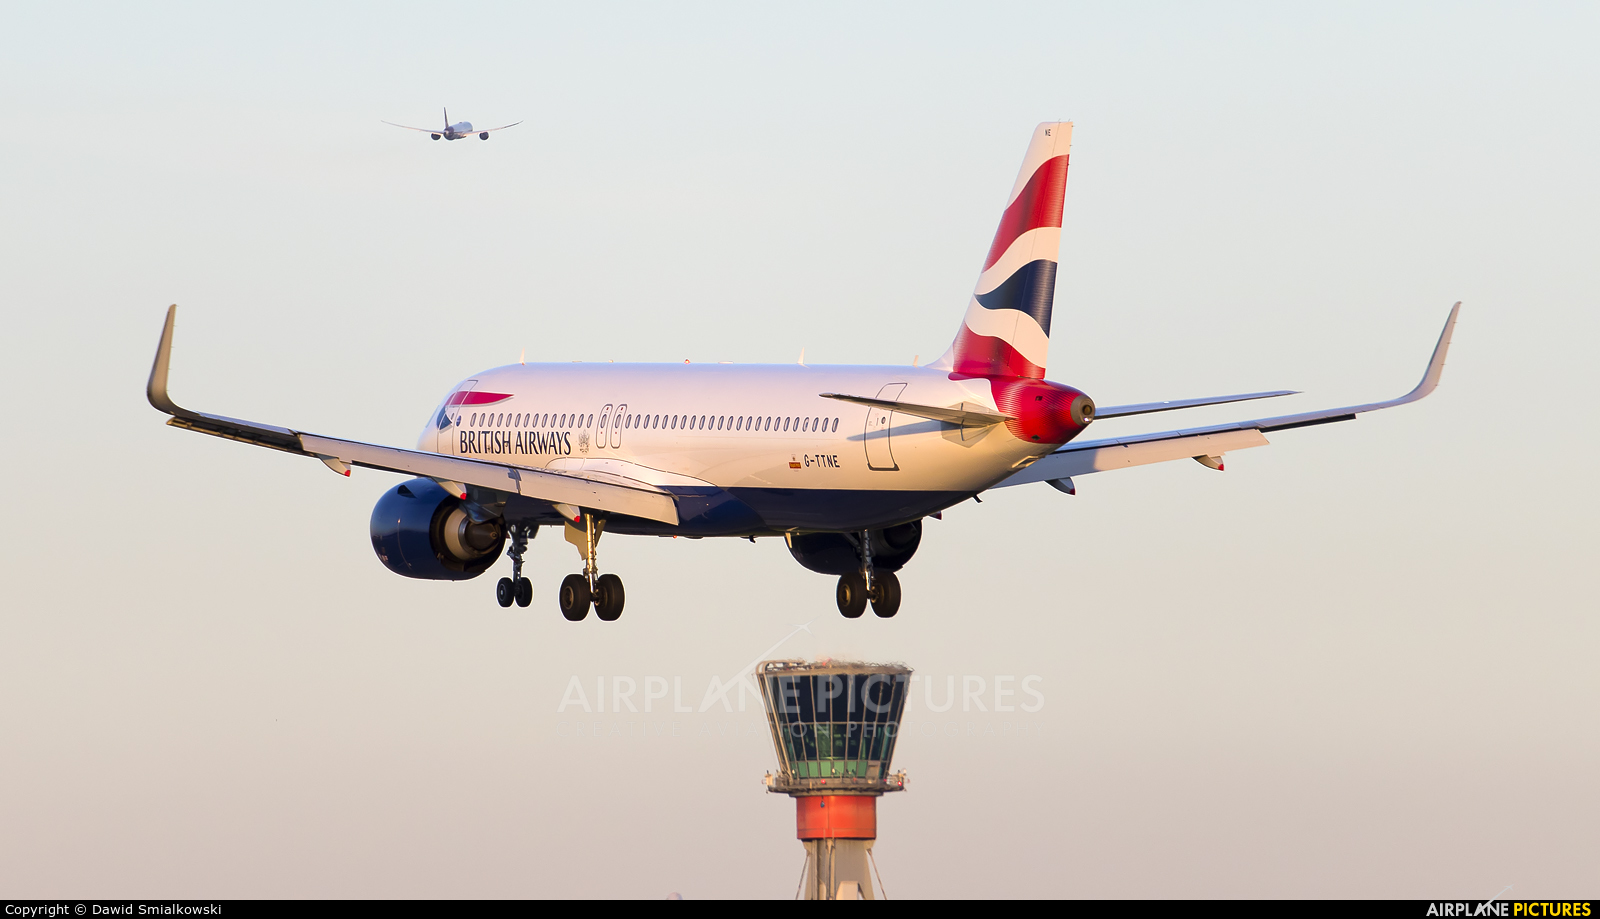 British Airways G-TTNE aircraft at London - Heathrow